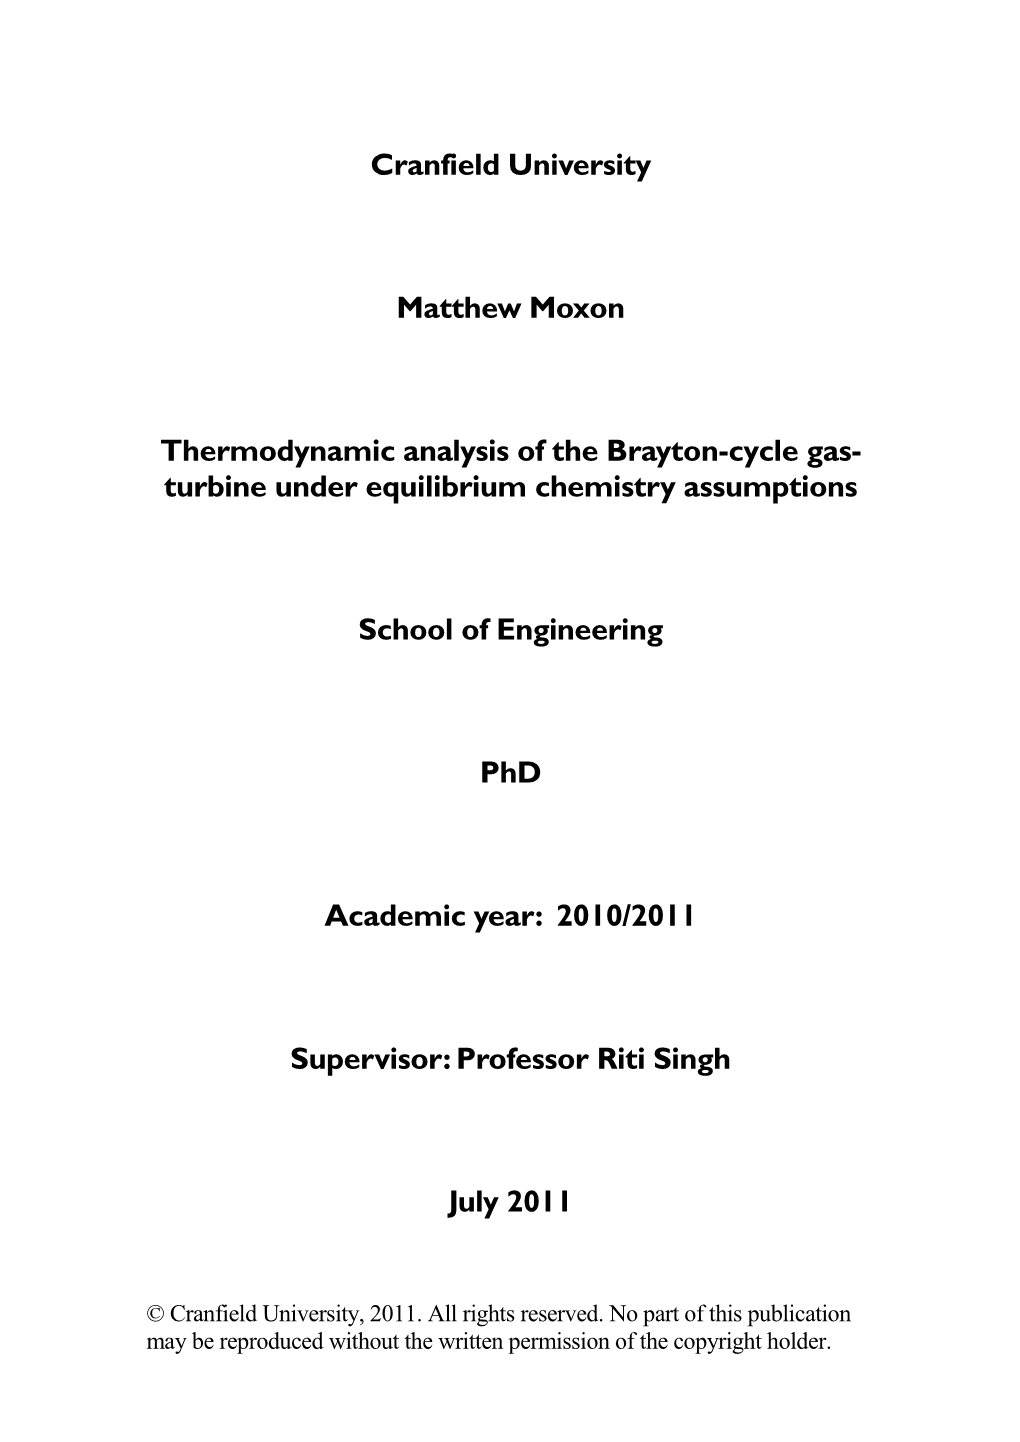 Cranfield University Matthew Moxon Thermodynamic Analysis of The